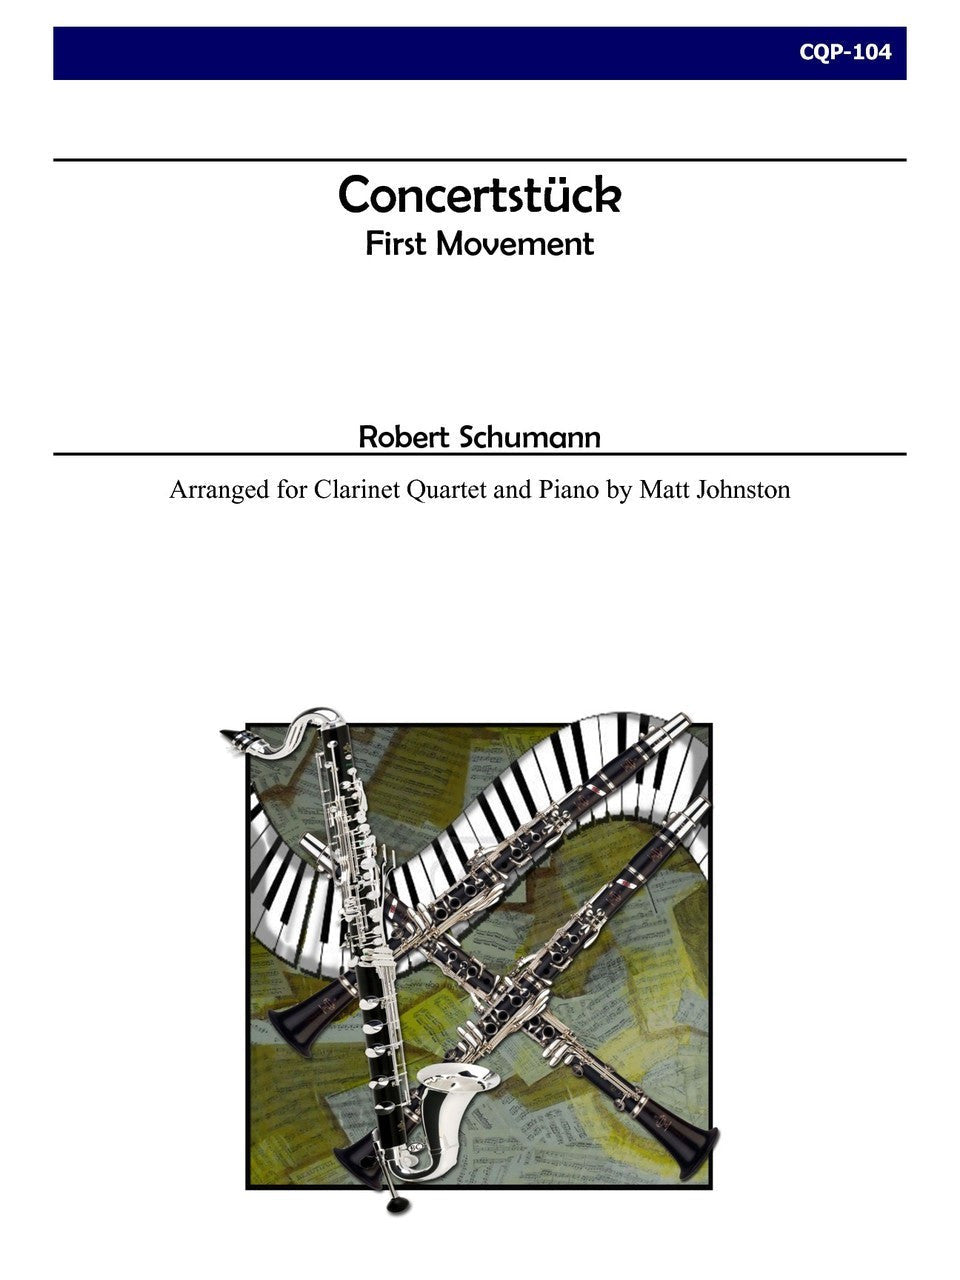 Schumann (arr. Matt Johnston) - Concertstück - First Movement for Clarinet Quartet and Piano